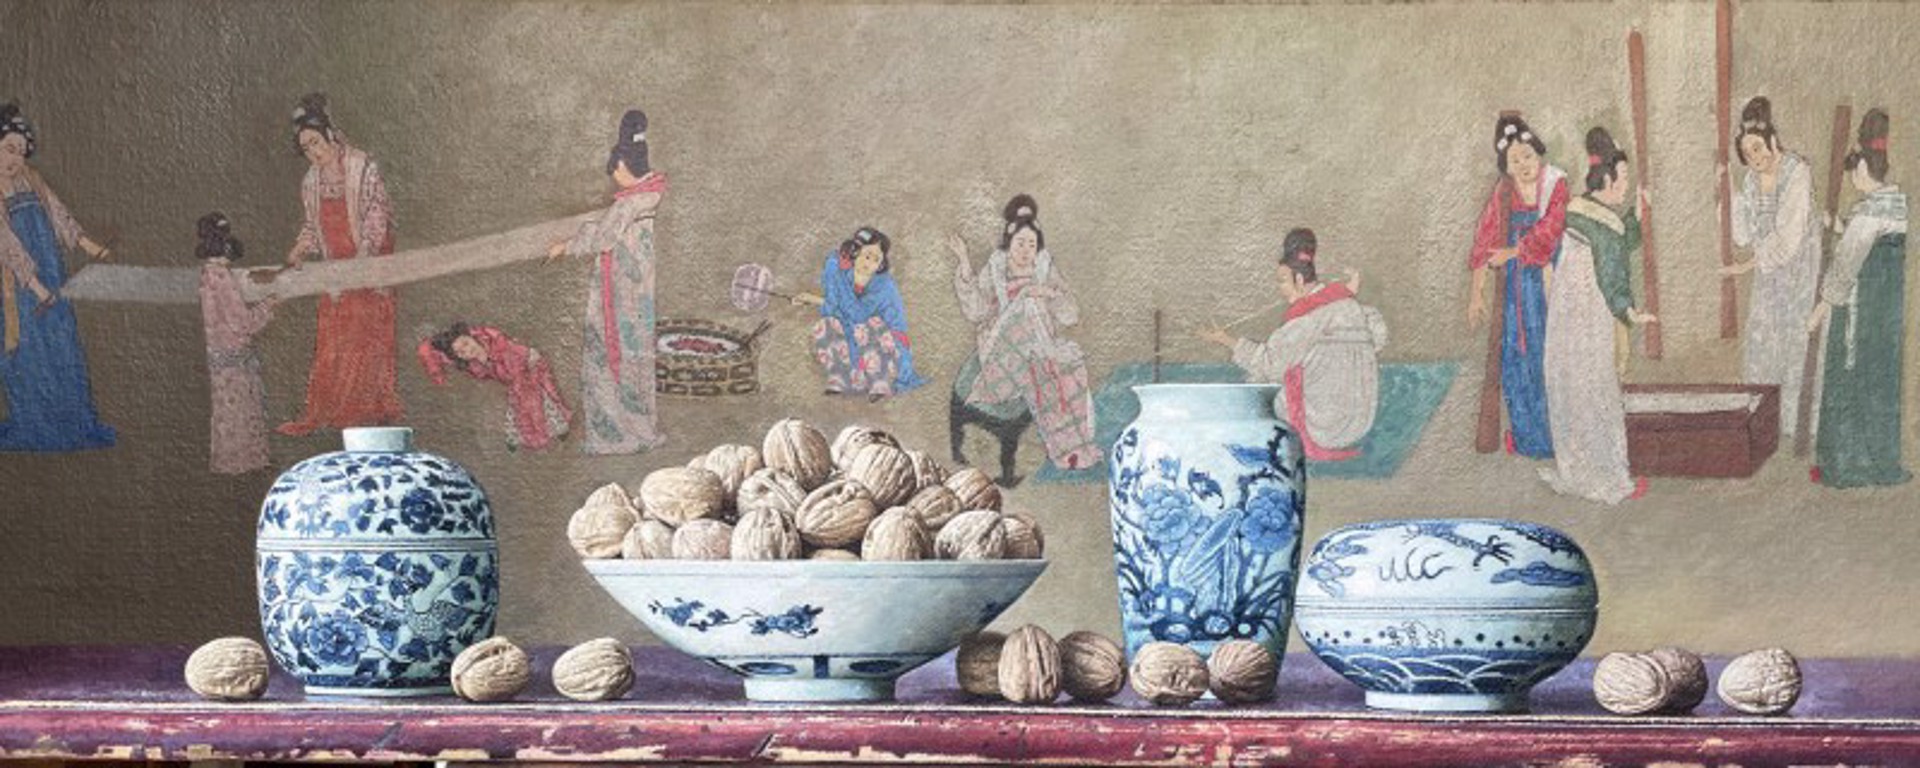 Washing Bed Sheet with Walnuts, Tang Dynasty by Yin Yong Chun